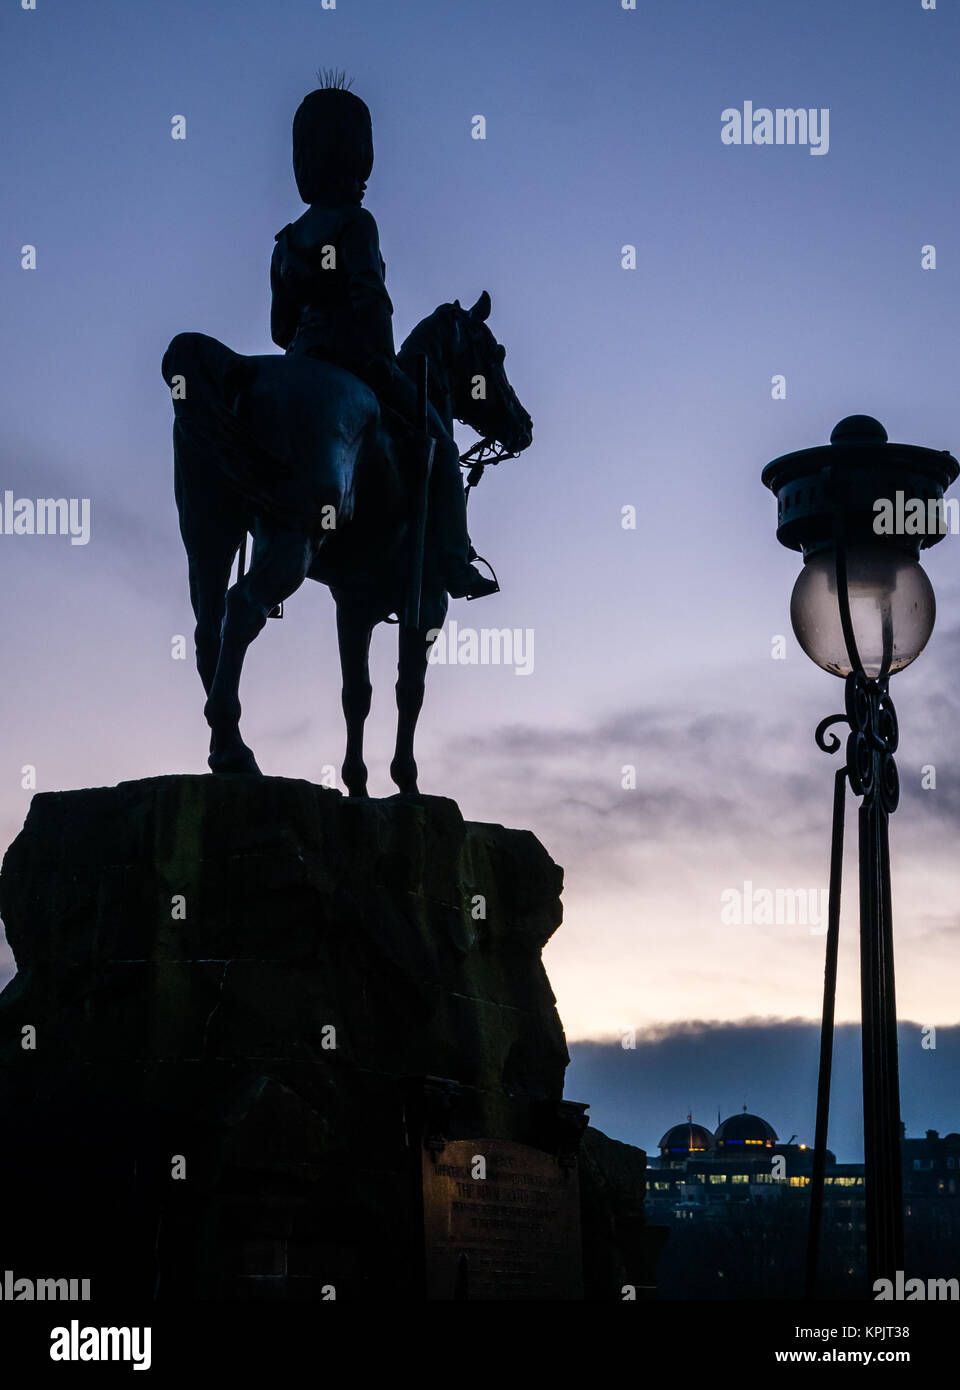 Silhouette Royal Scots Grays monumento soldato del cavallo da William Birnie Rhind, Edinburgh Castle Rock, Princes Street, Edimburgo, Scozia, Regno Unito Foto Stock